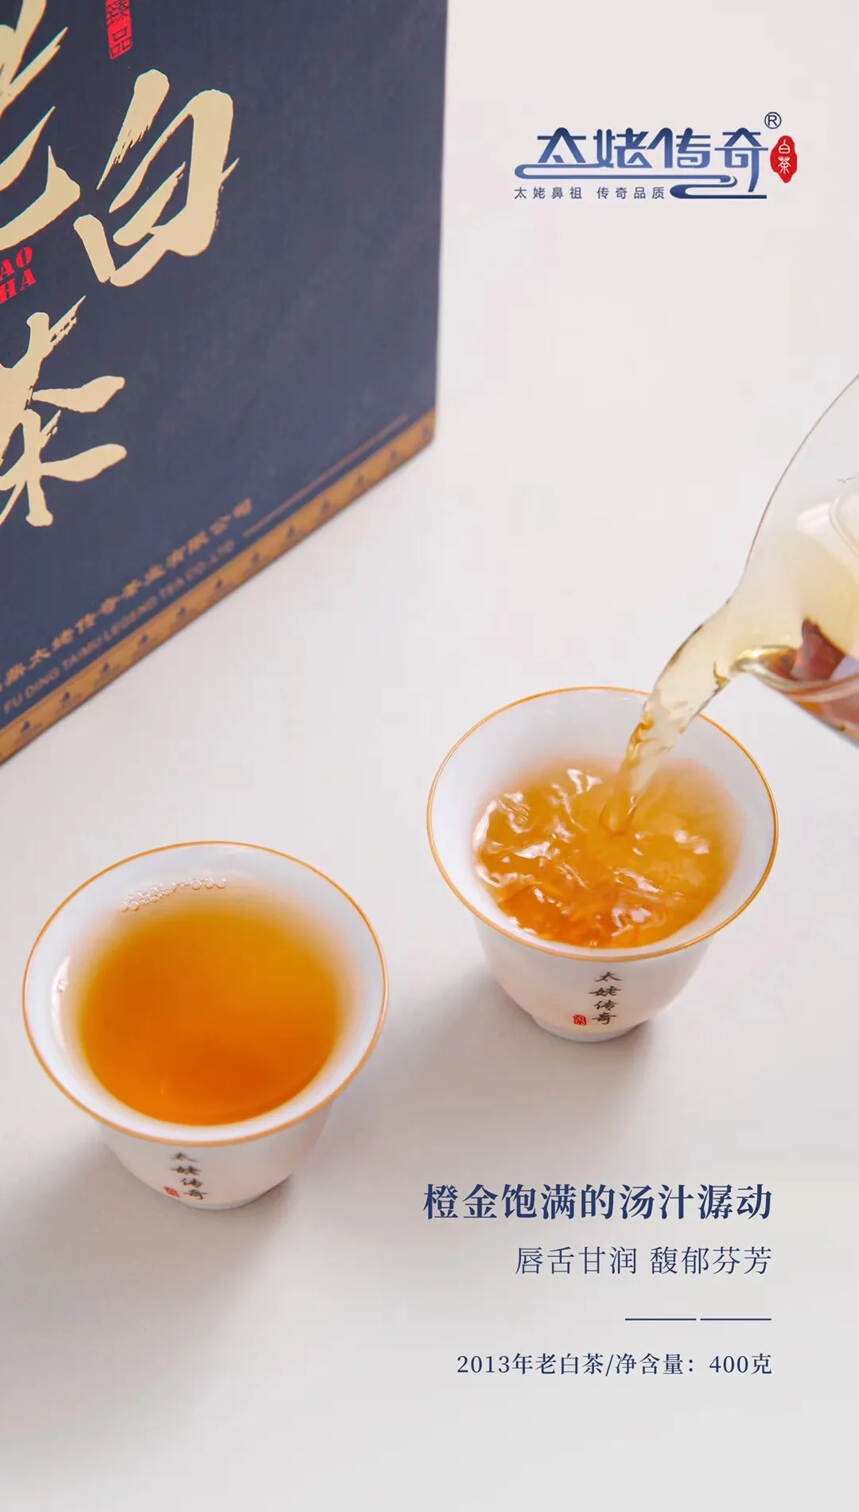 |太姥传奇—2013年老白茶|
传统日晒，正味品质，